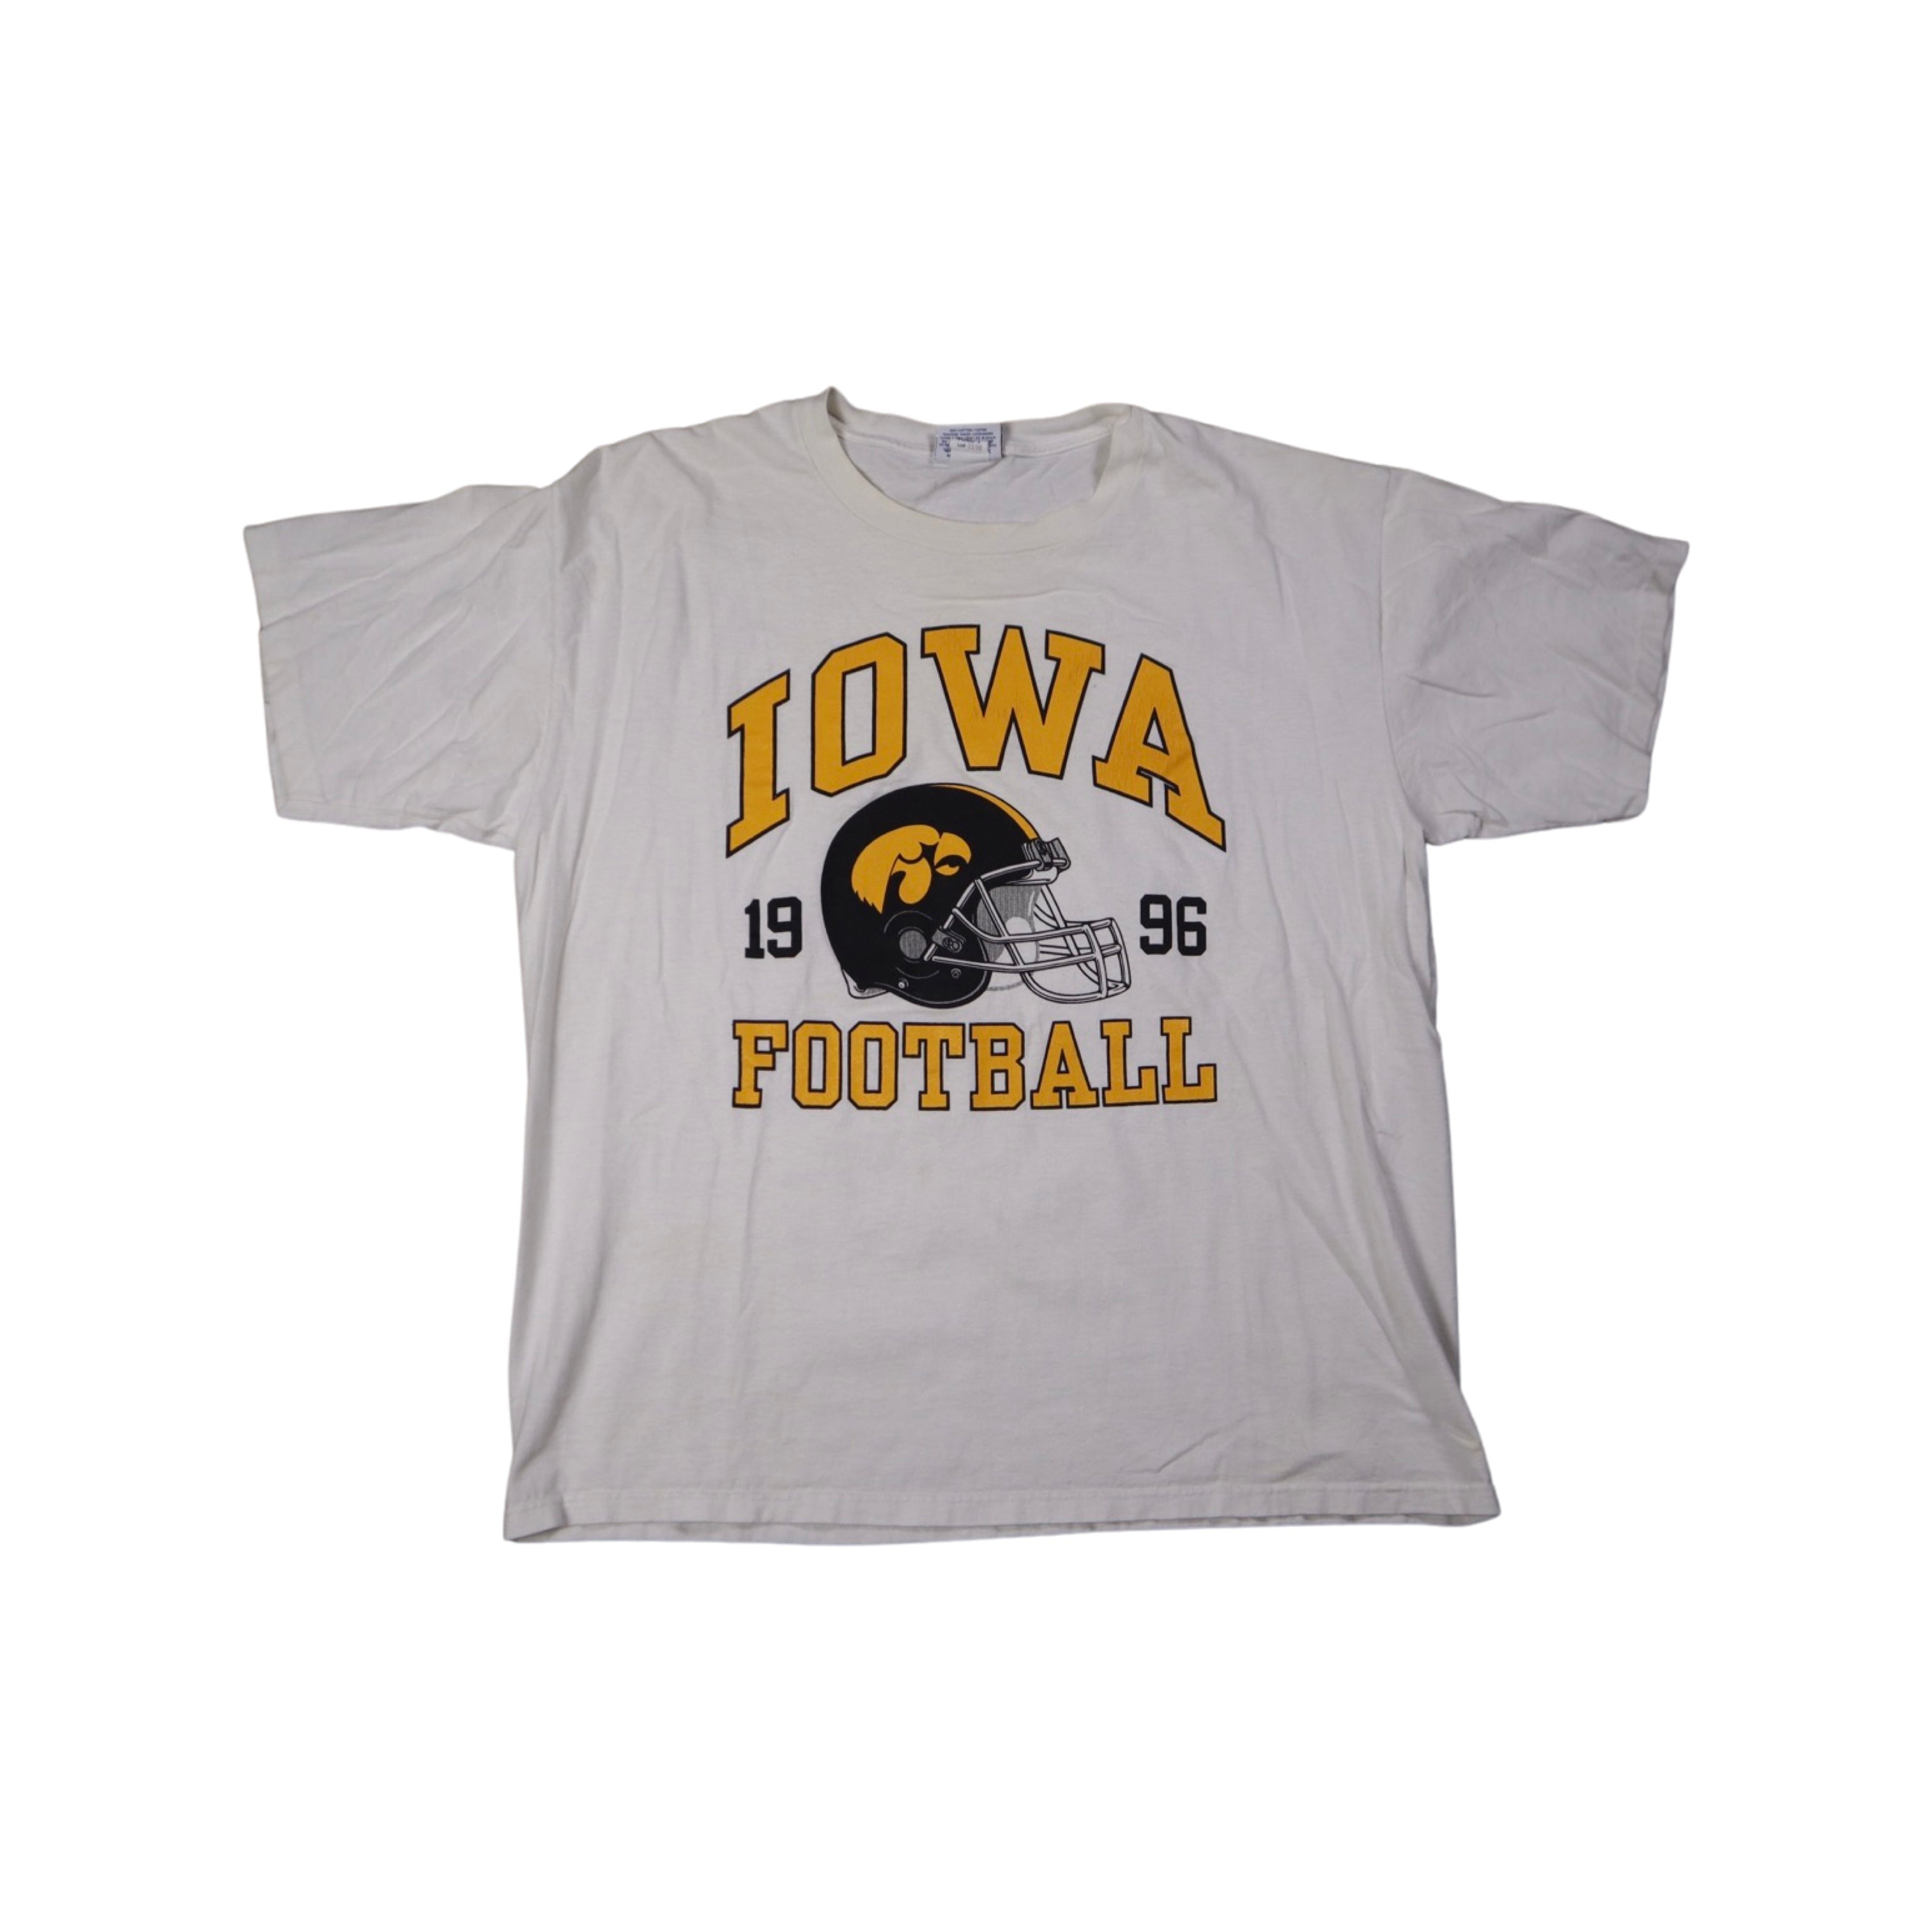 Iowa Football 1996 T-Shirt (XL)